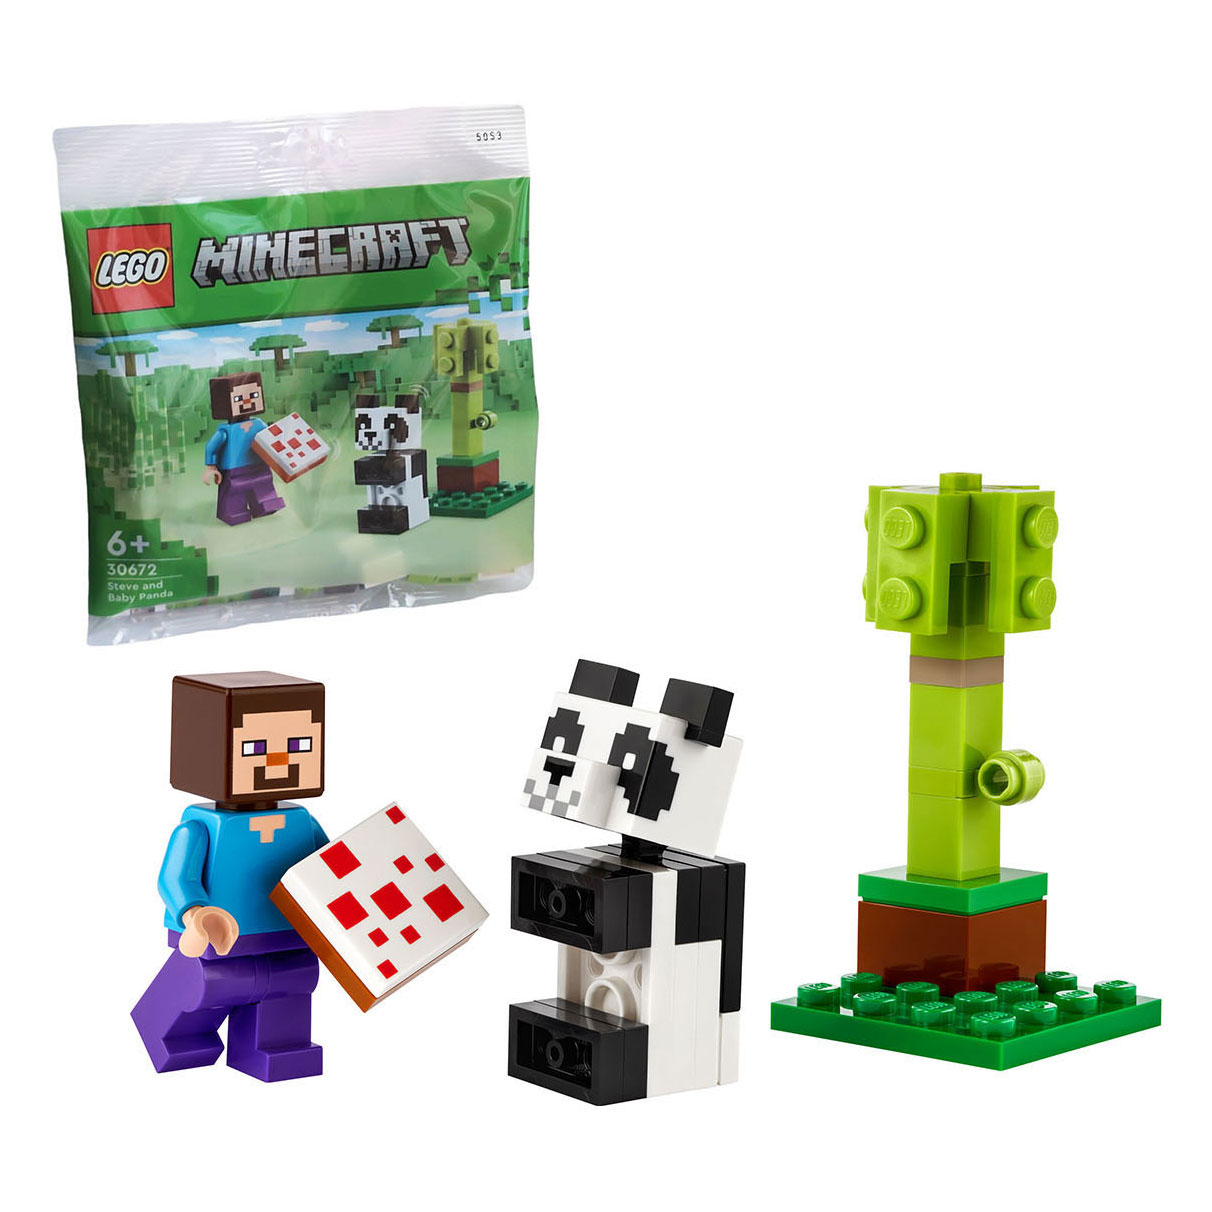 LEGO Minecraft 30672 Steve et bébé Panda